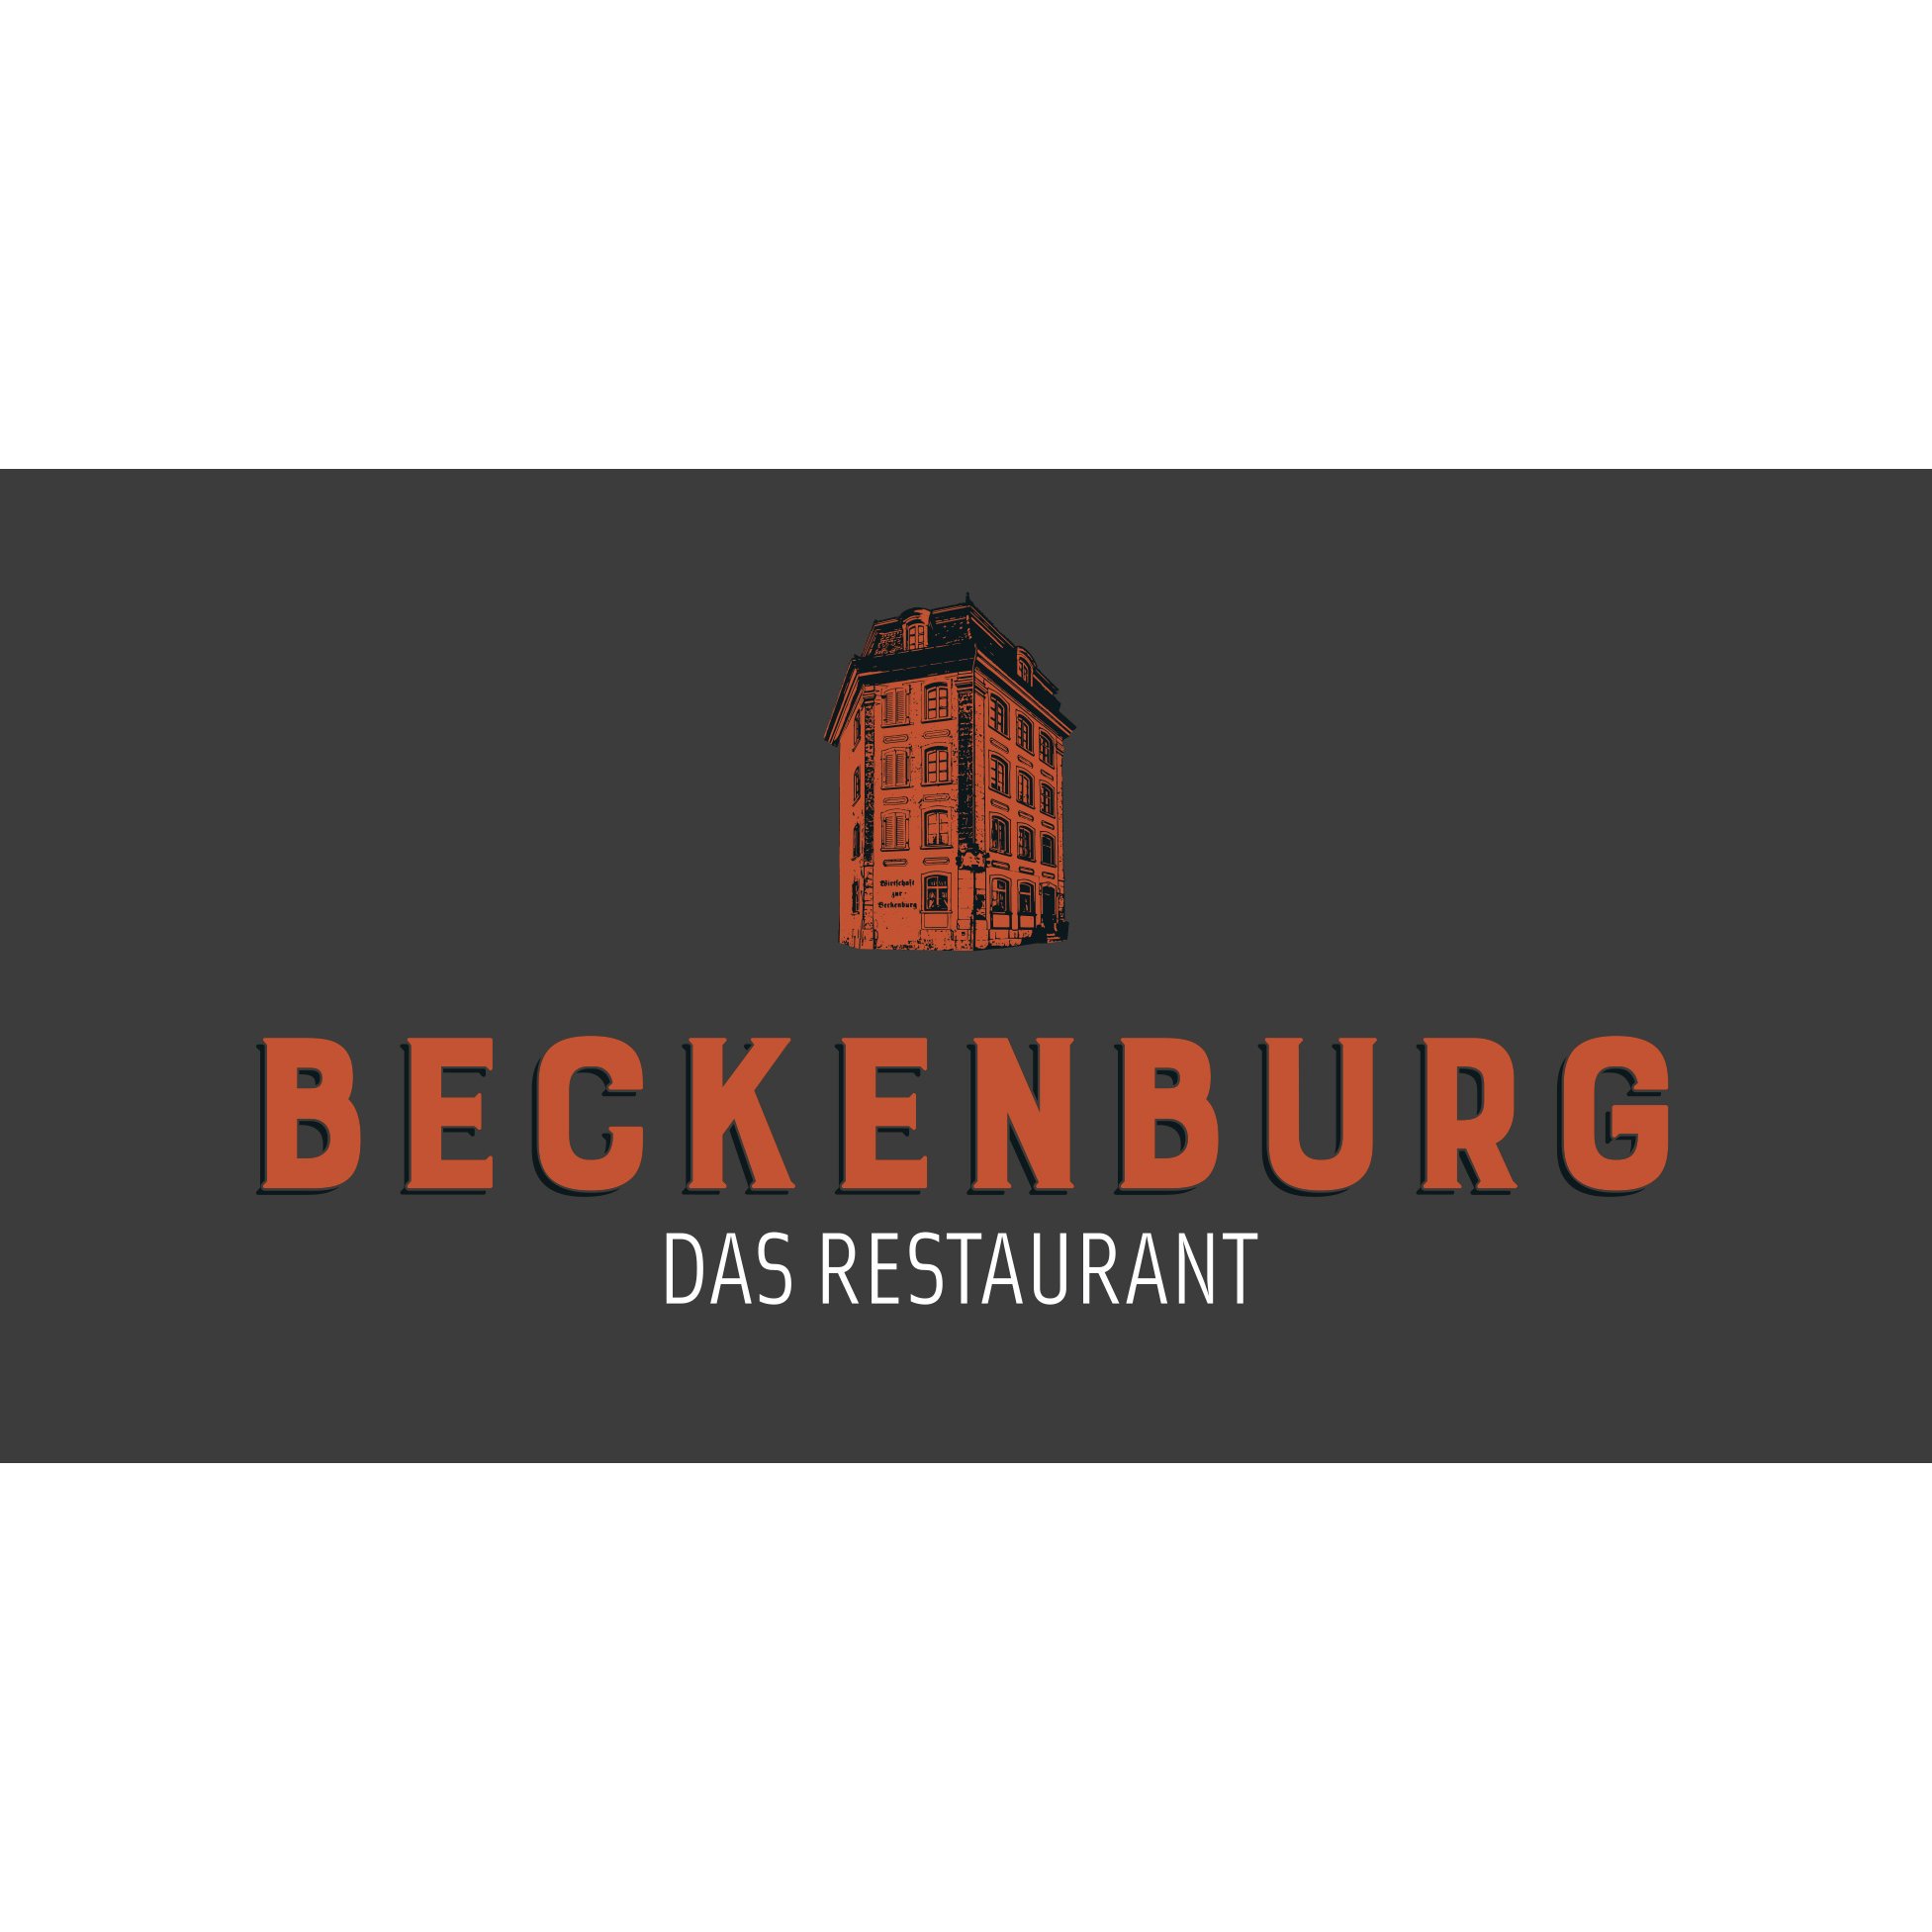 Beckenburg das Restaurant in Schaffhausen